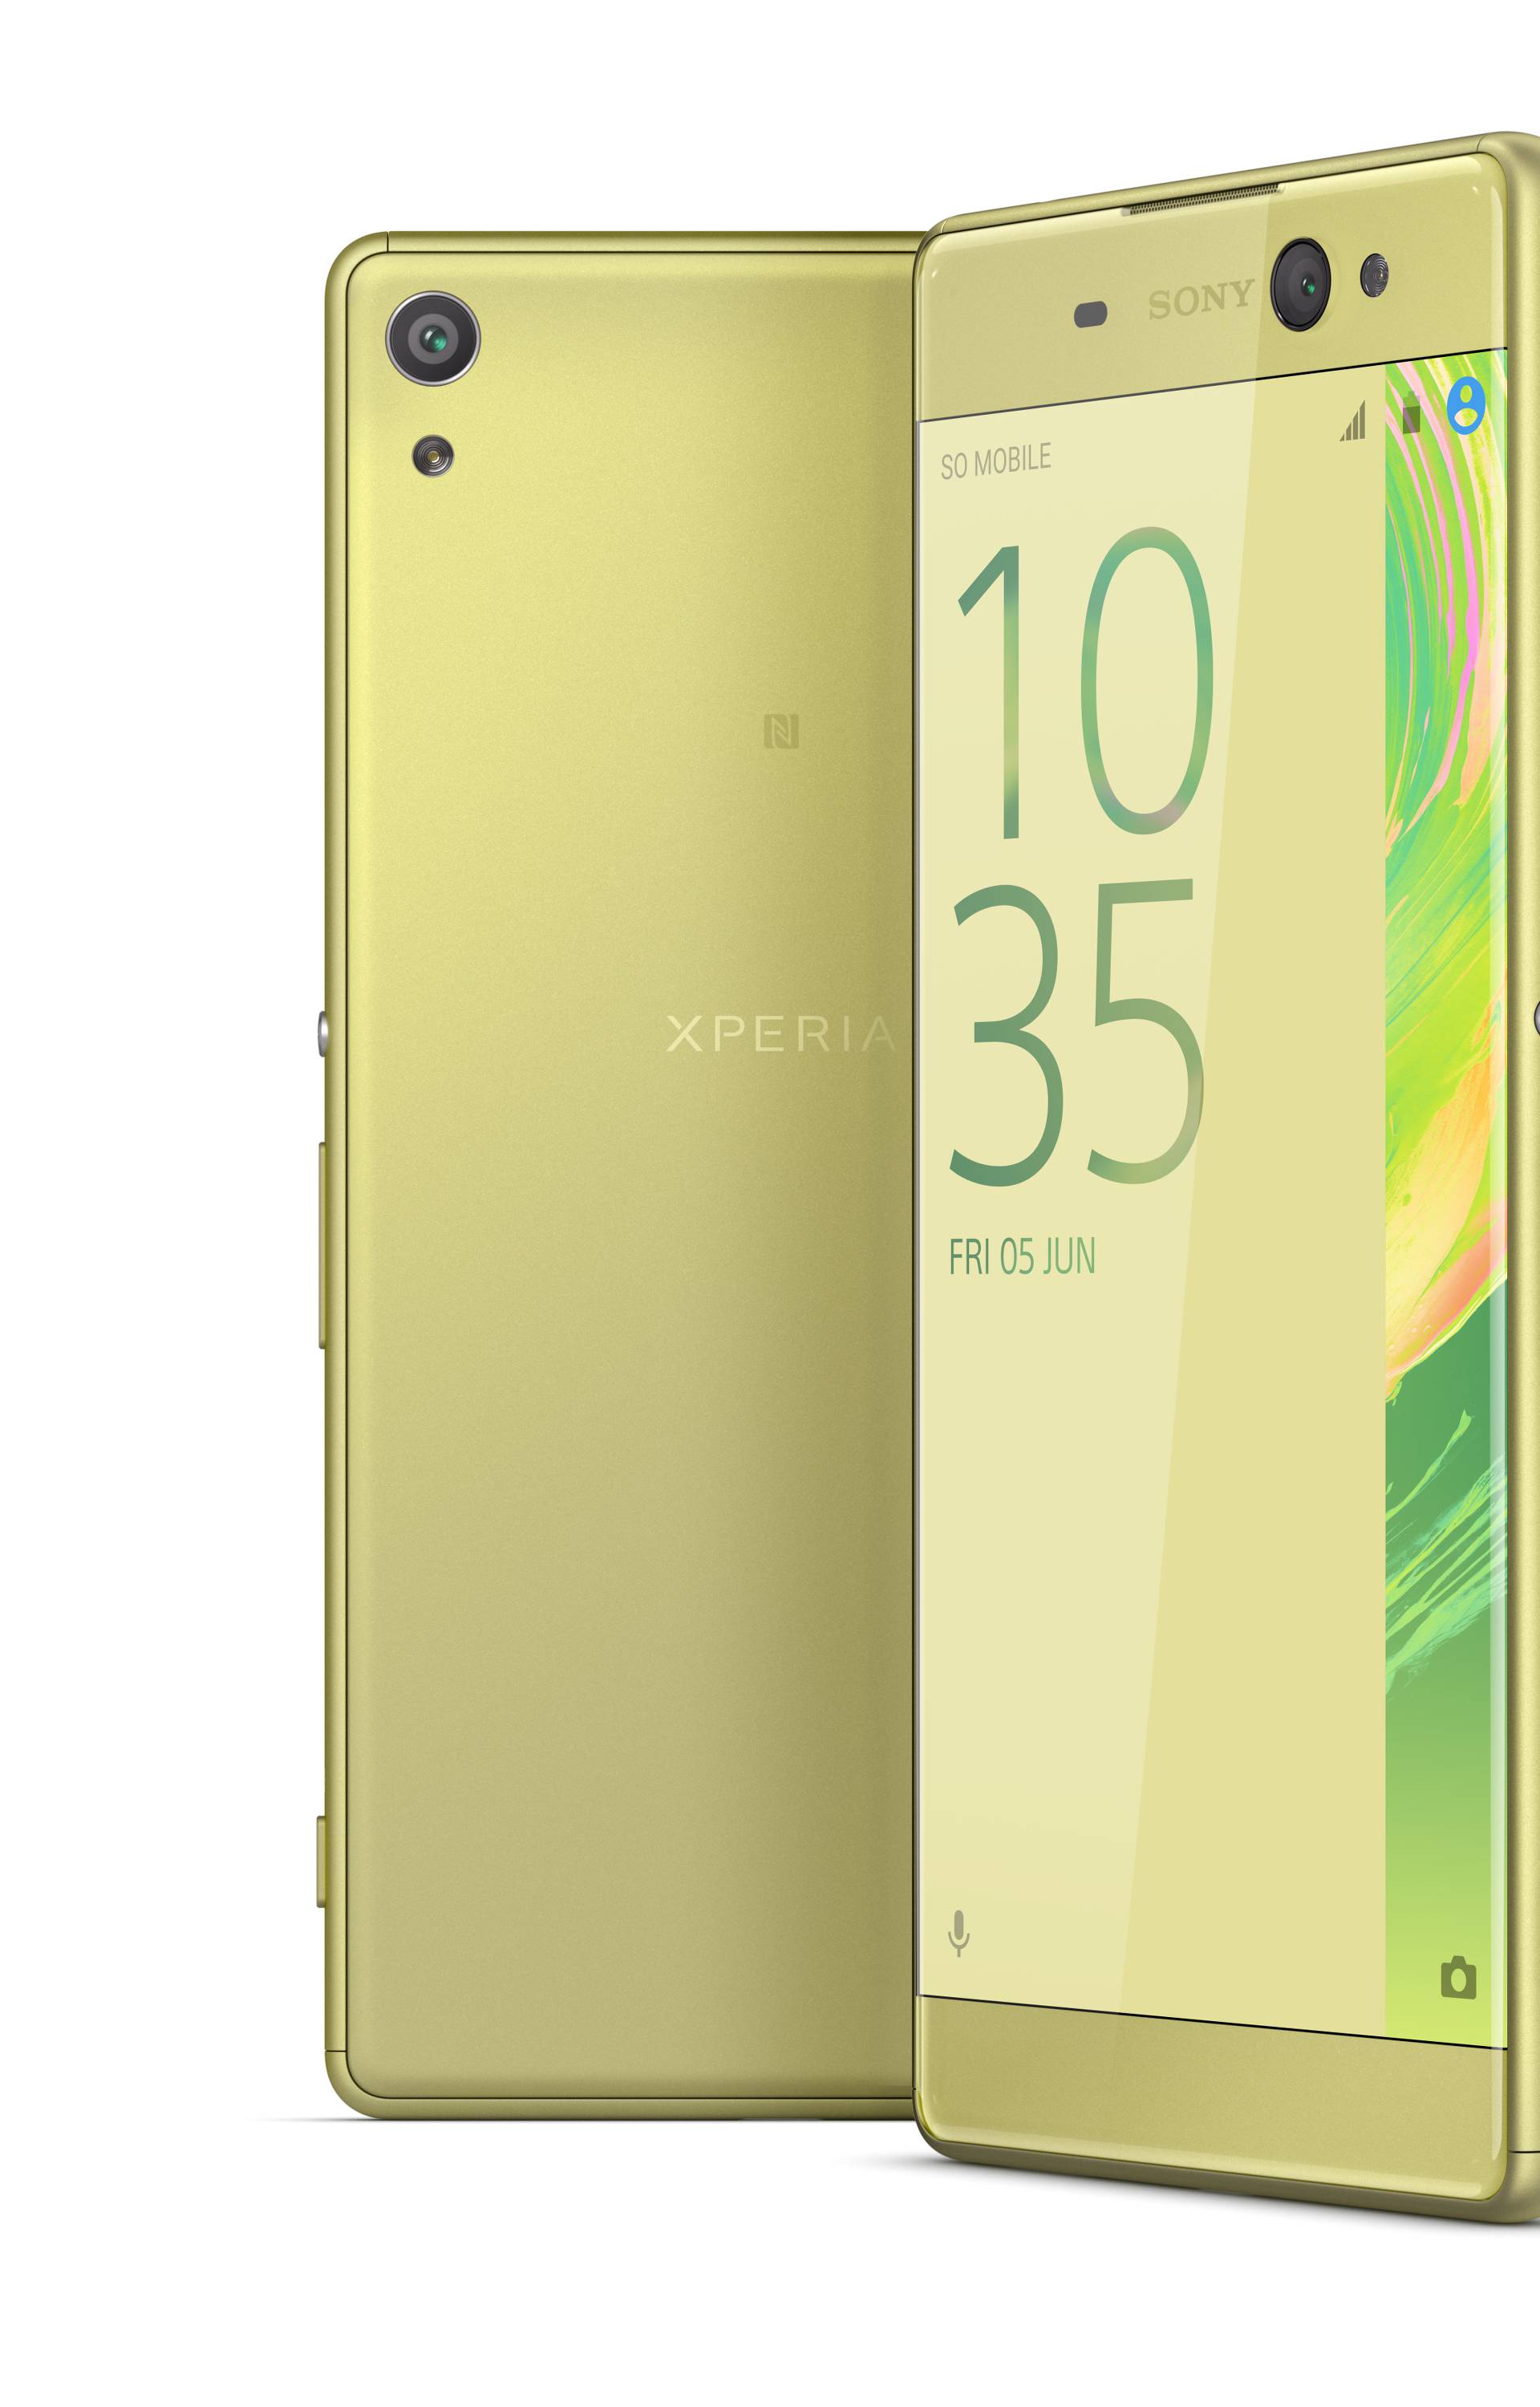 Xperia XA Ultra: Veliki telefon s najboljom selfie kamerom?